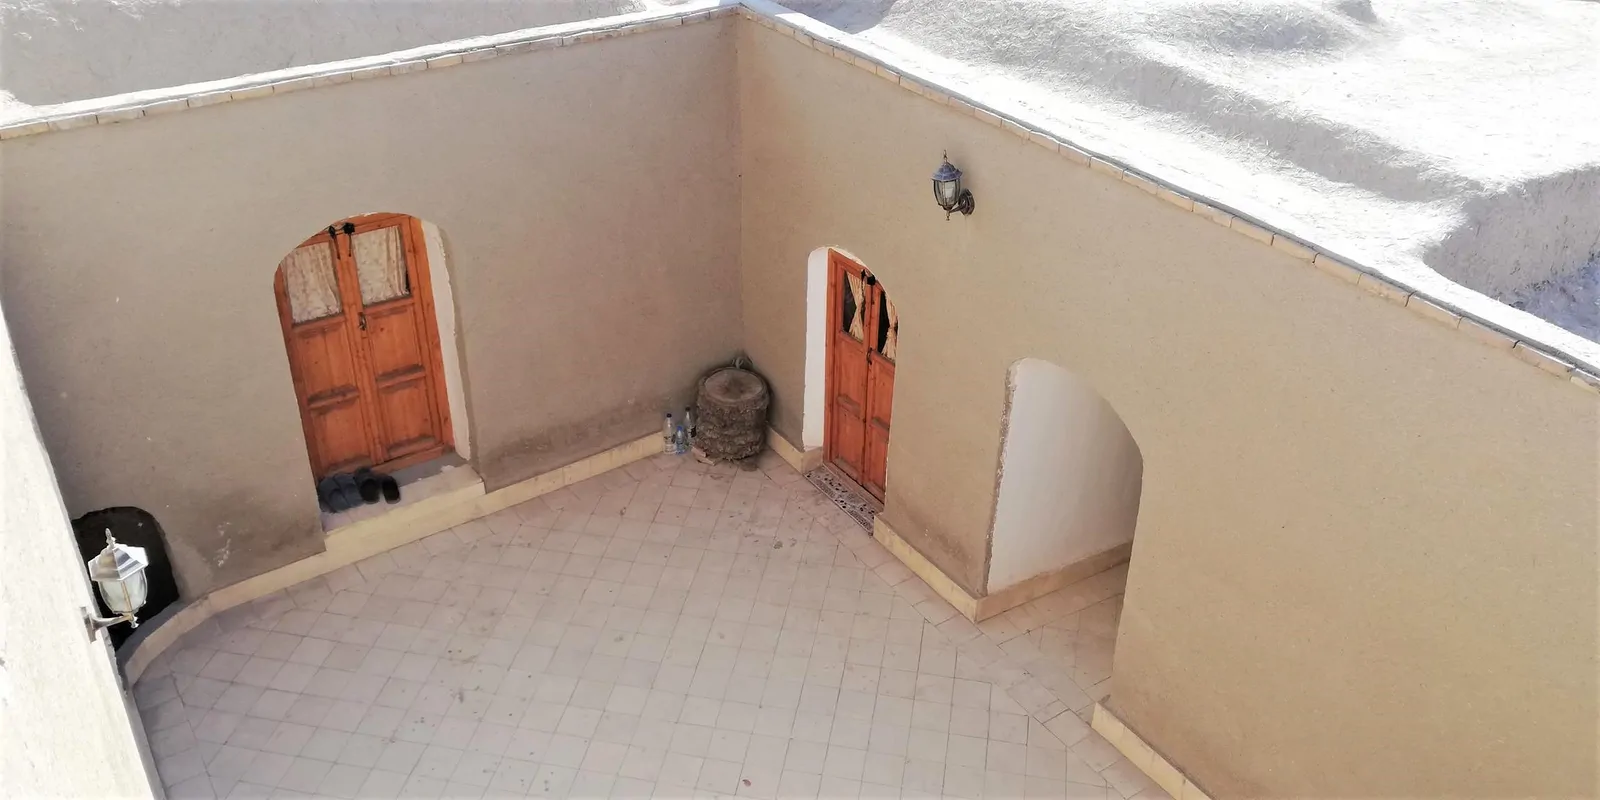 اقامتگاه بوم‌گردی آق سید ذبیح الله  (اتاق زیر پله)،طبس - اجاره اقامتگاه بوم‌گردی در طبس - اتاقک